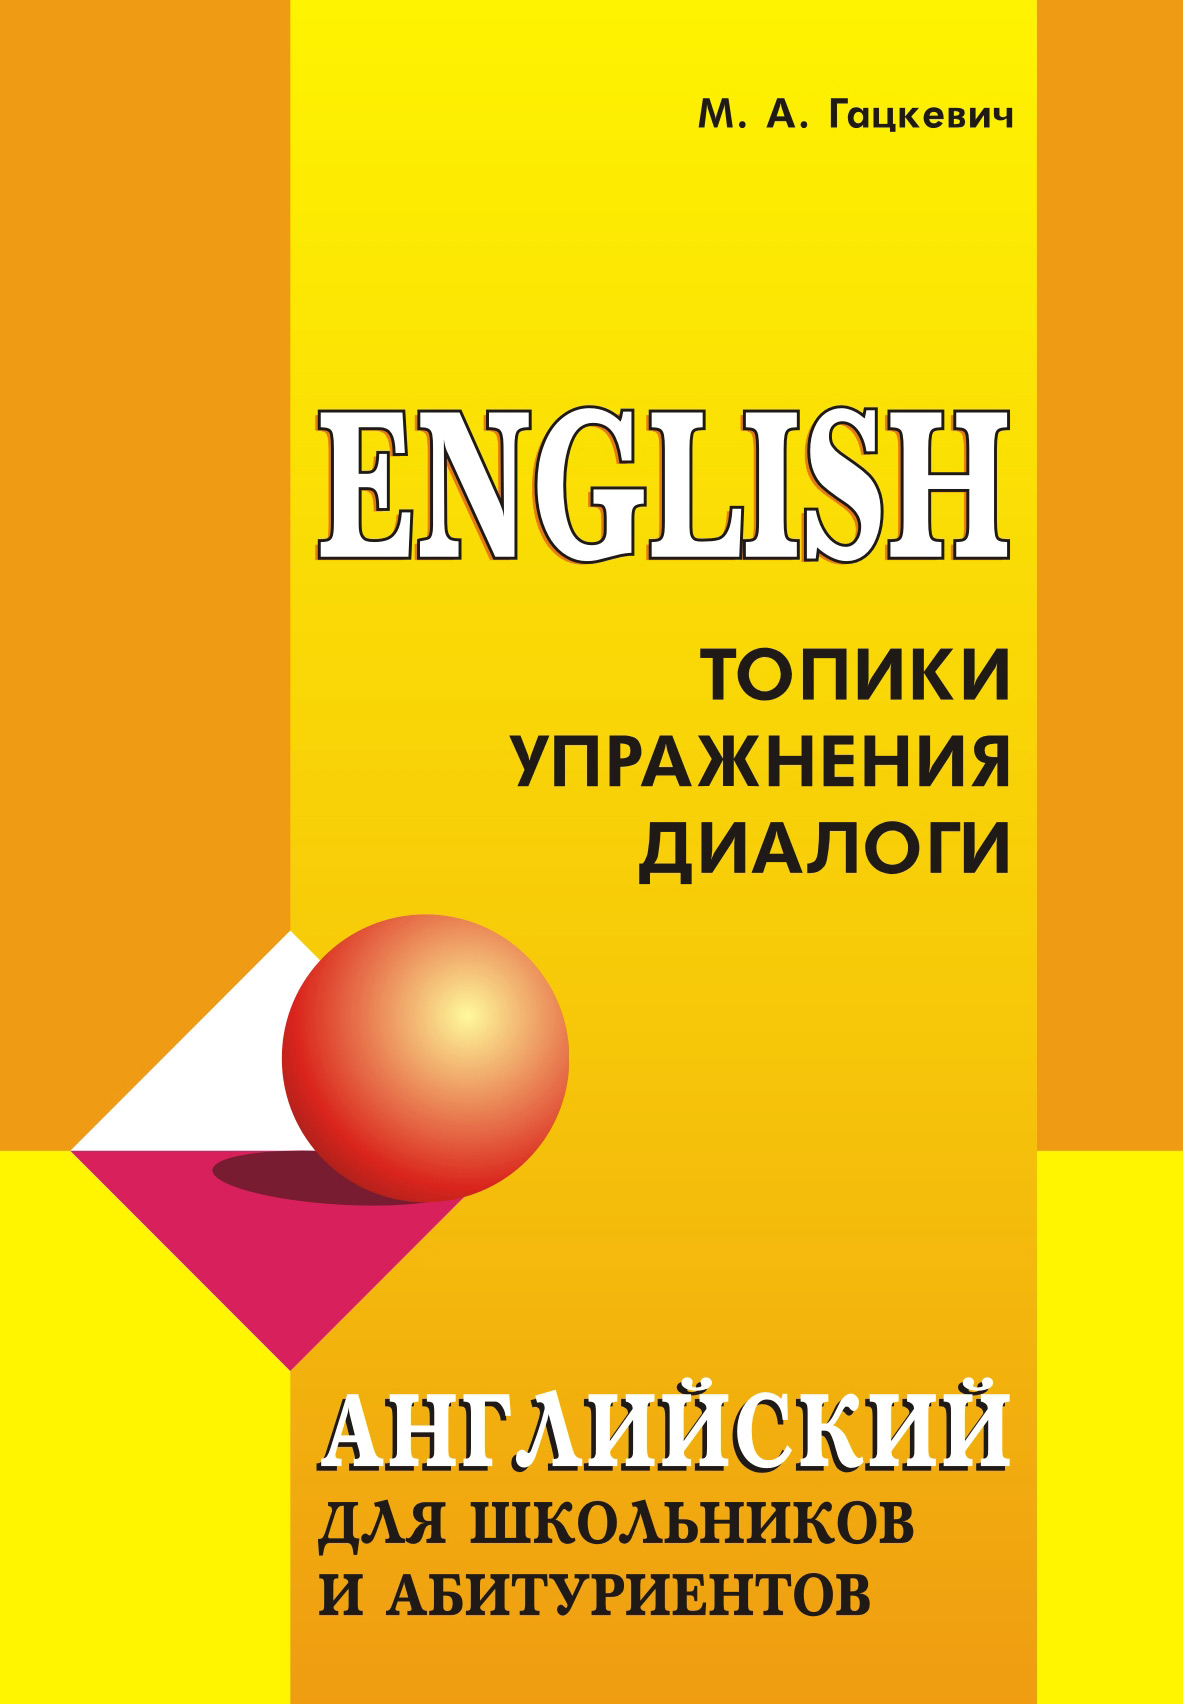 Марина Гацкевич Английский язык для школьников и абитуриентов: Топики, упражнения, диалоги